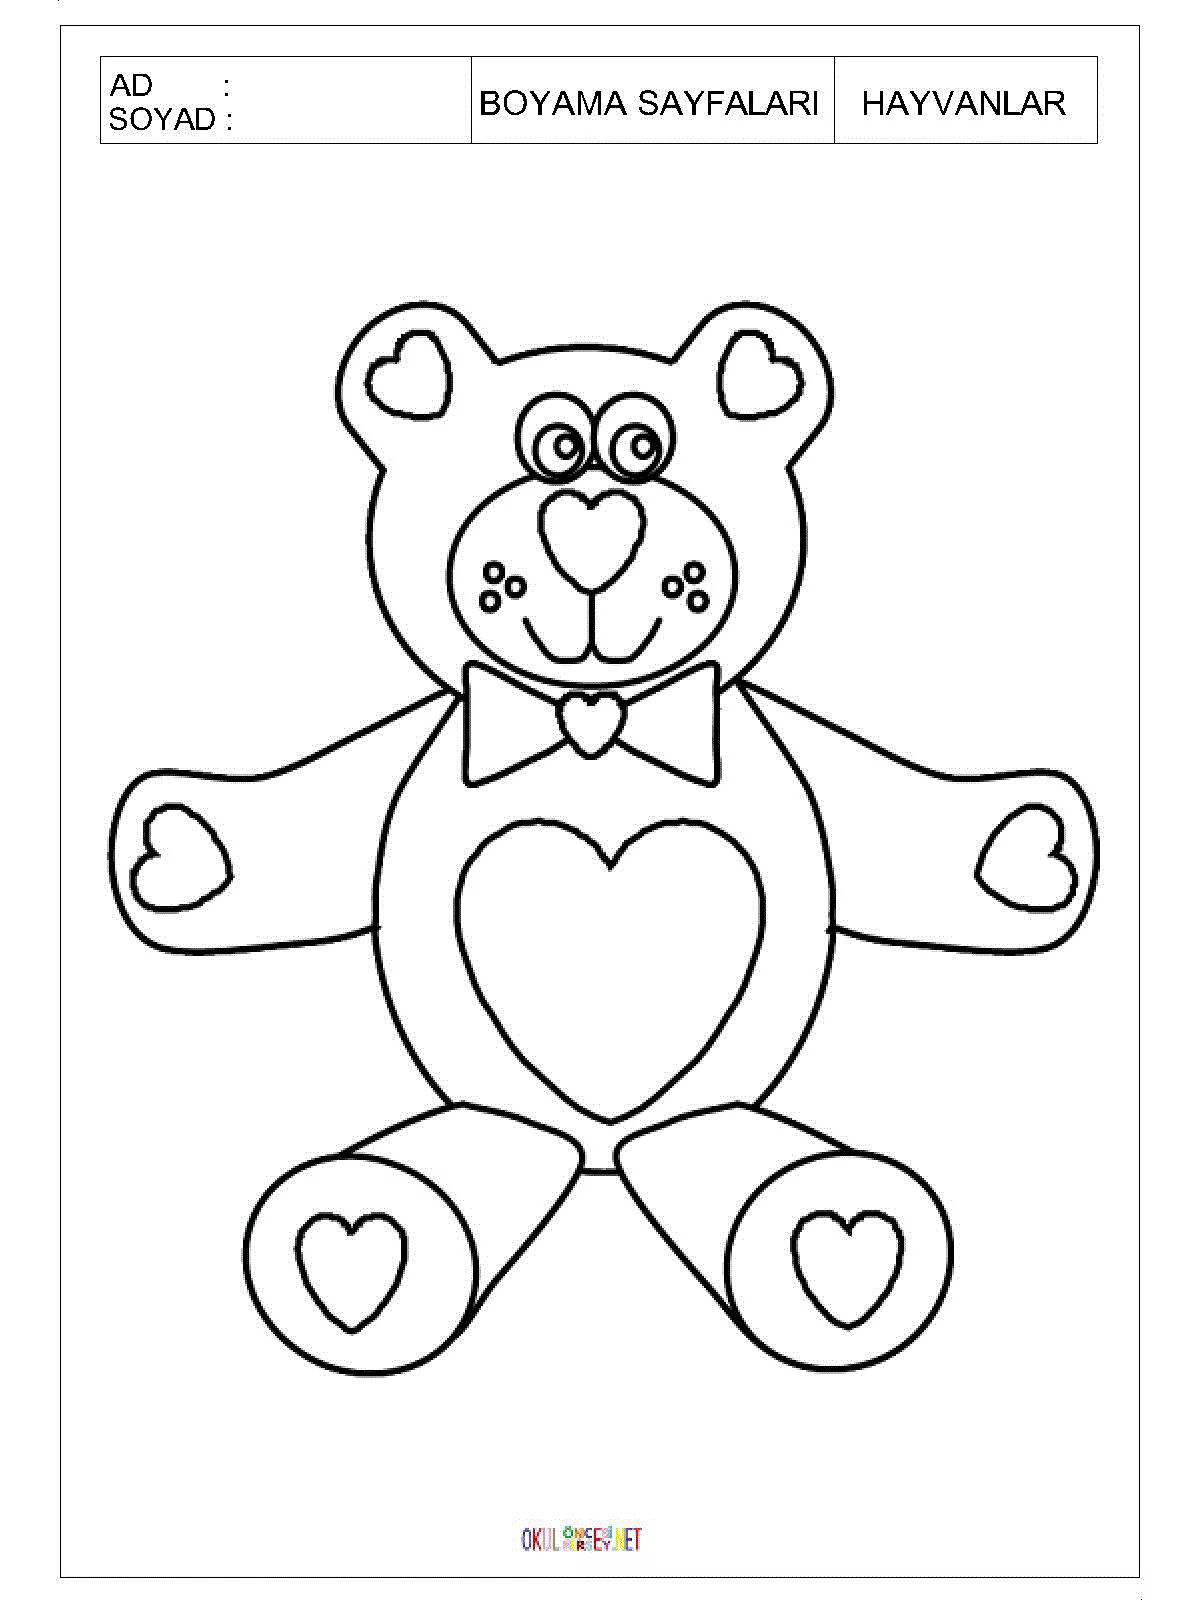 Teddy Bear #2